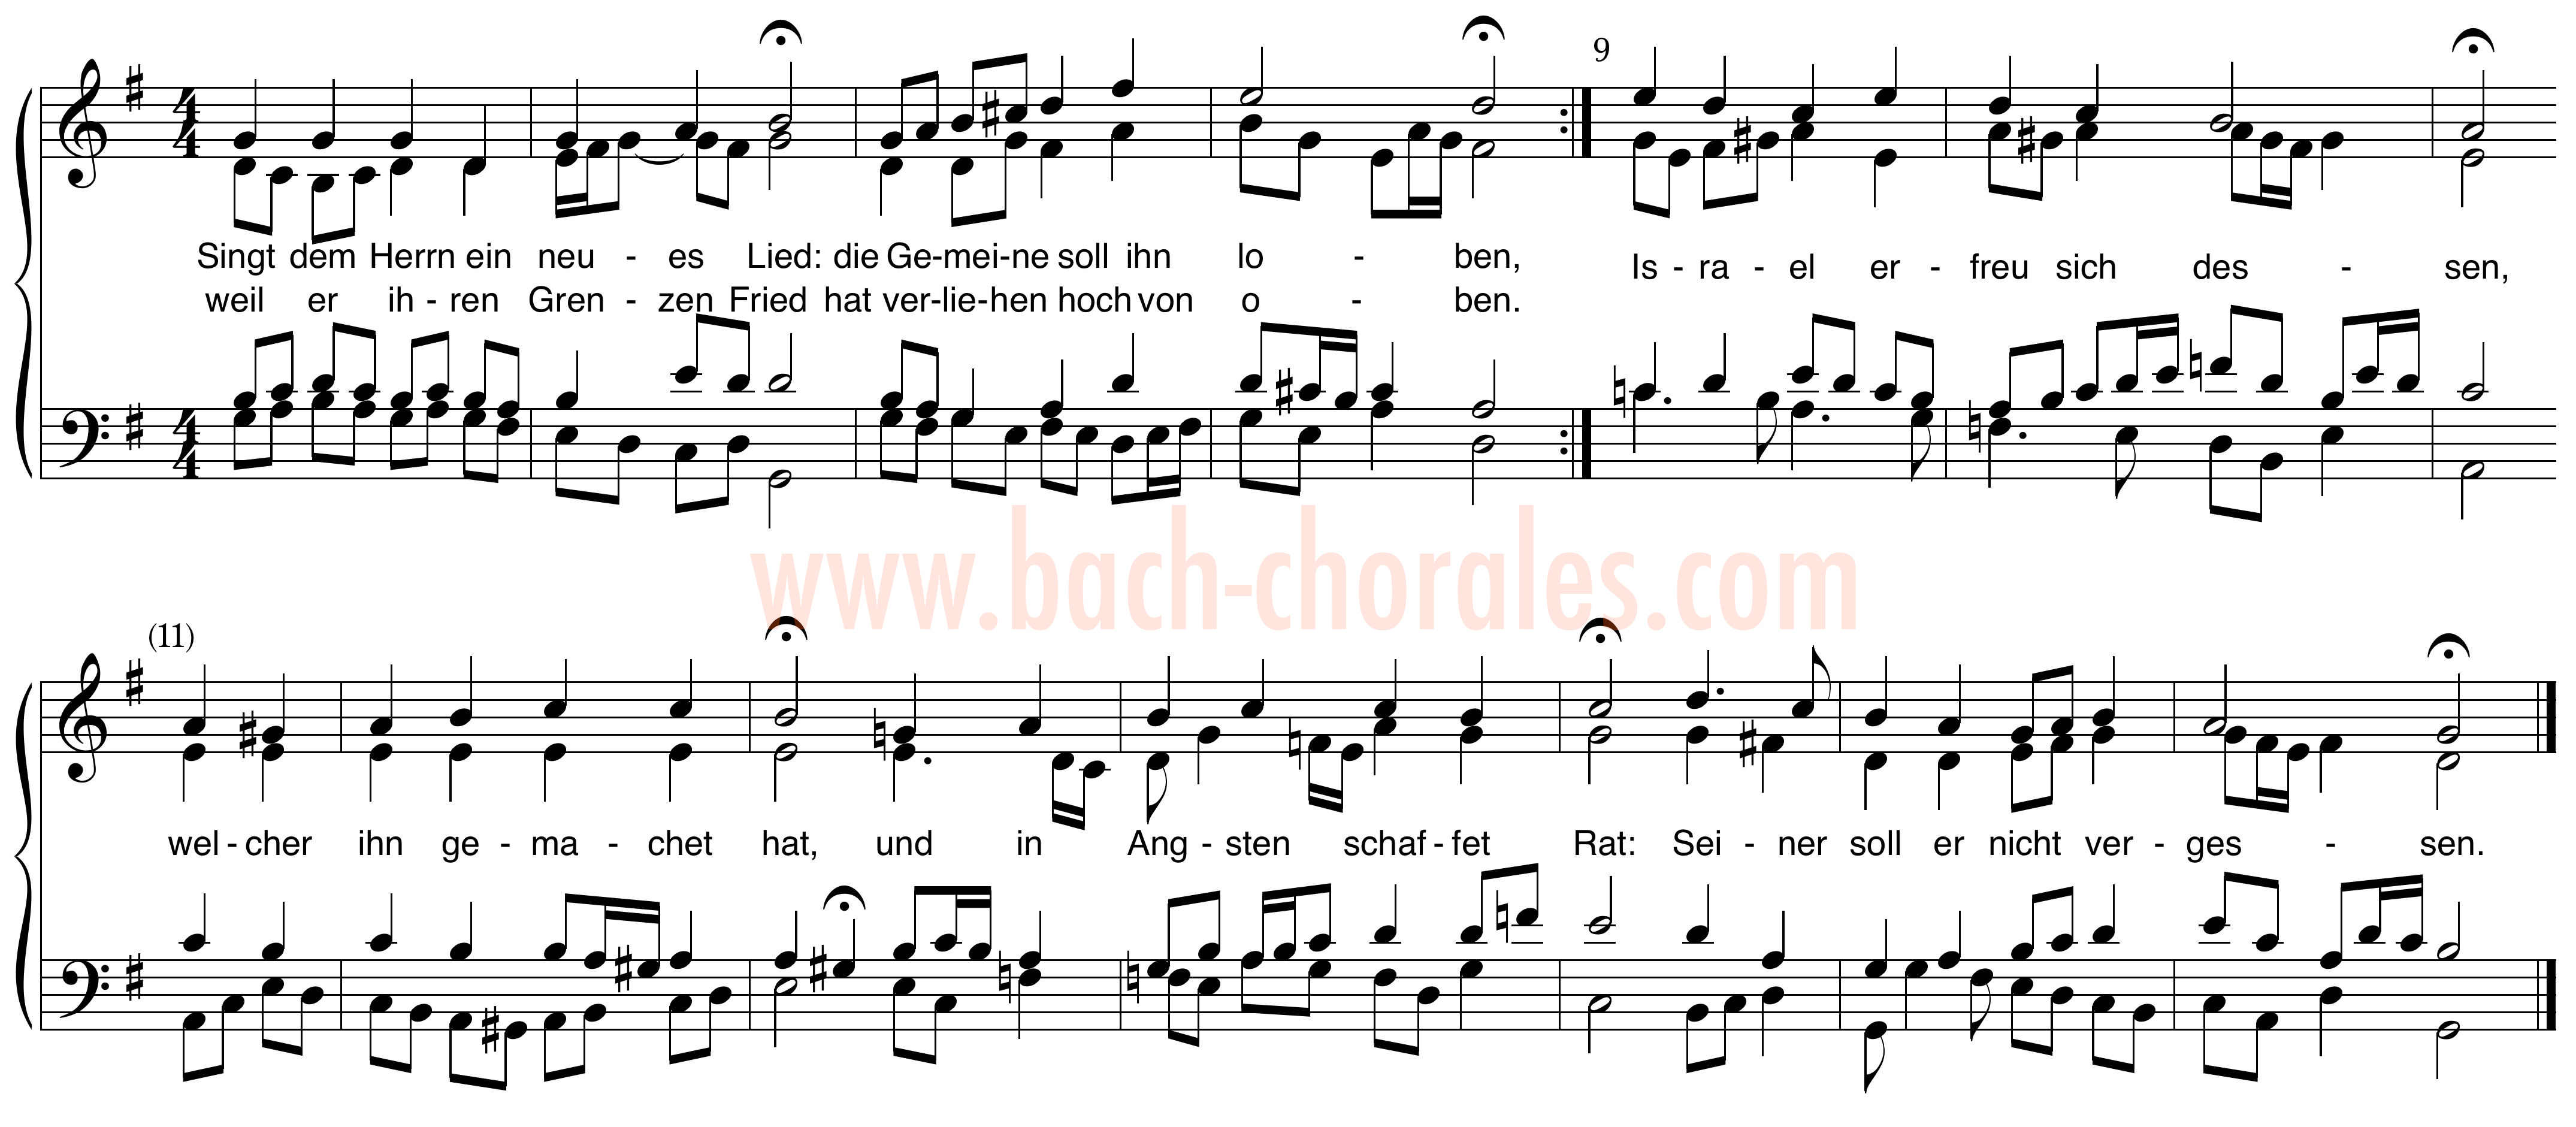 notenbeeld BWV 411 op https://www.bach-chorales.com/